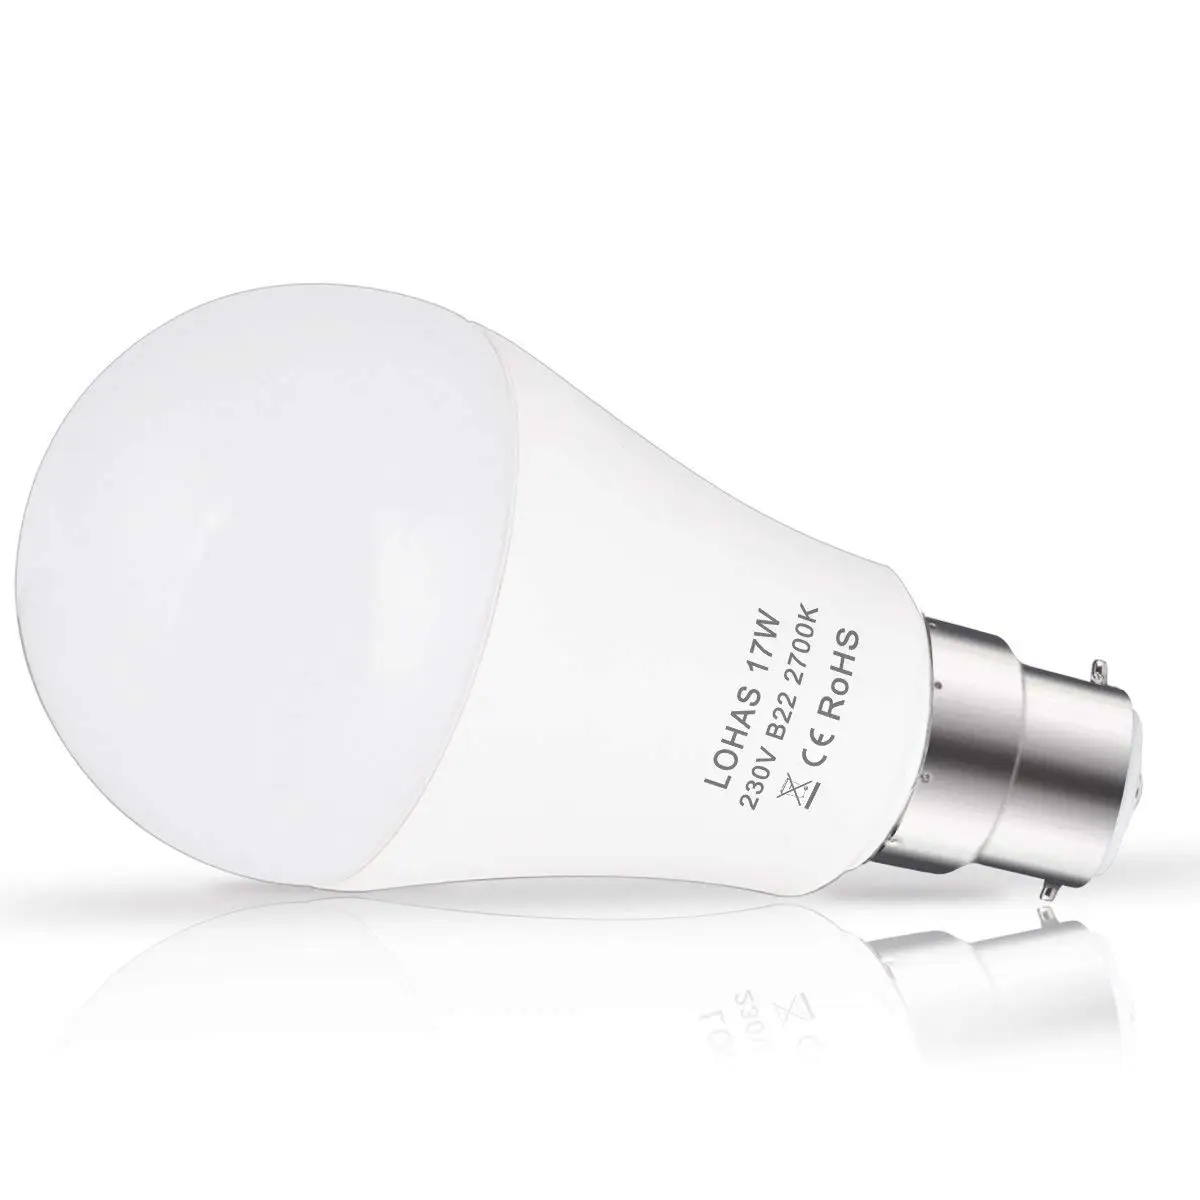 B22 Светодиодный лампы 150W эквивалент 17W светодиодный байонетный свет теплый белый 2700K супер яркий 1600LM энергосберегающий светильник, 4-Pack